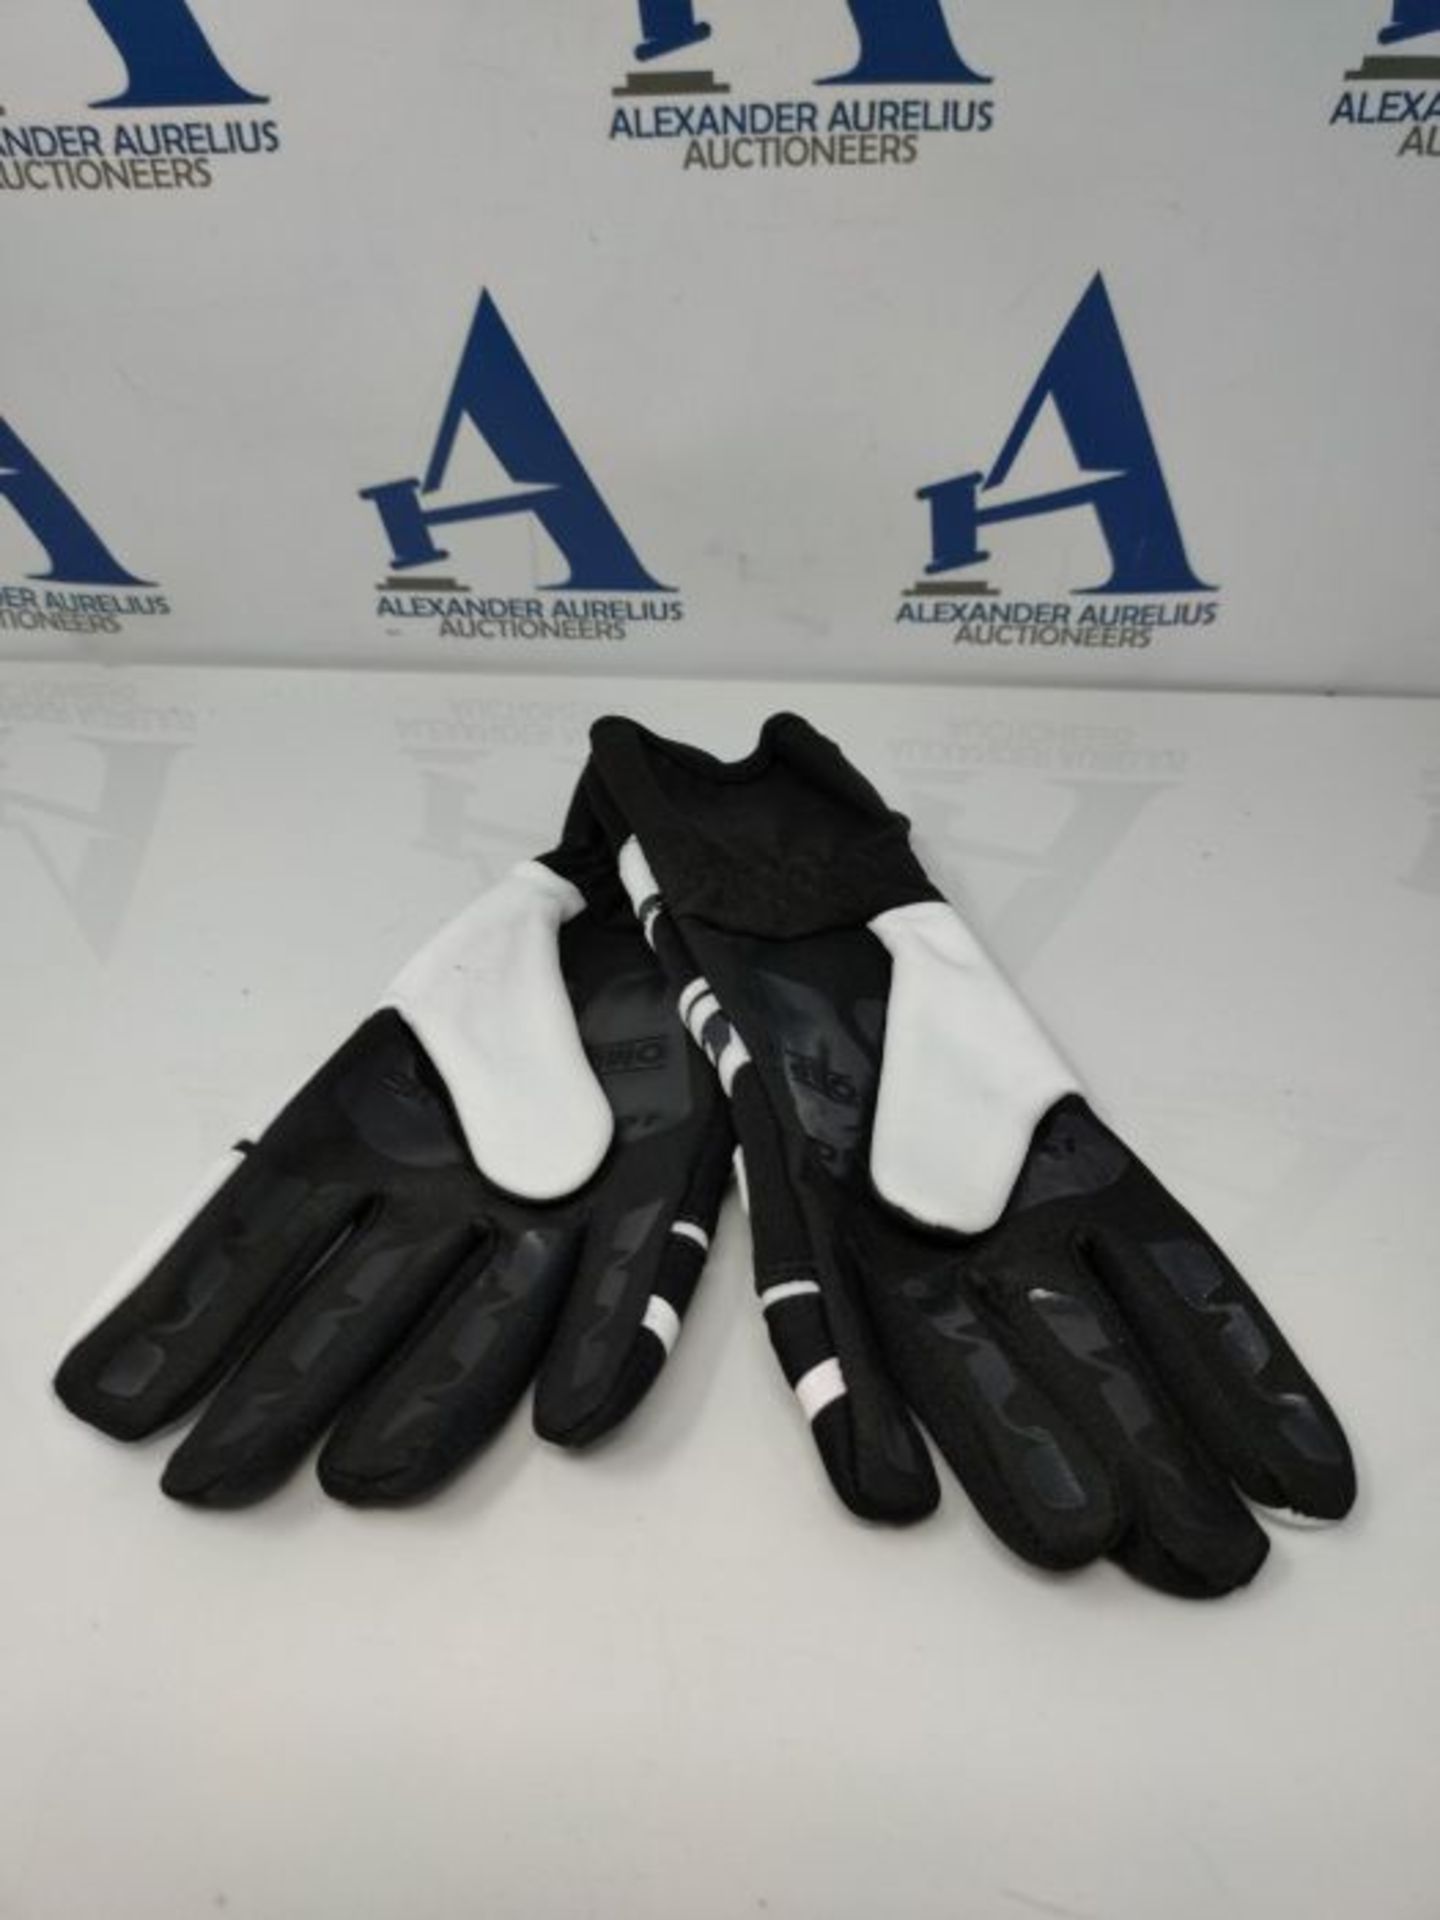 Omp ompkk02743e076s KS-3 Gloves MY2018 Black/White sz s - Image 2 of 2